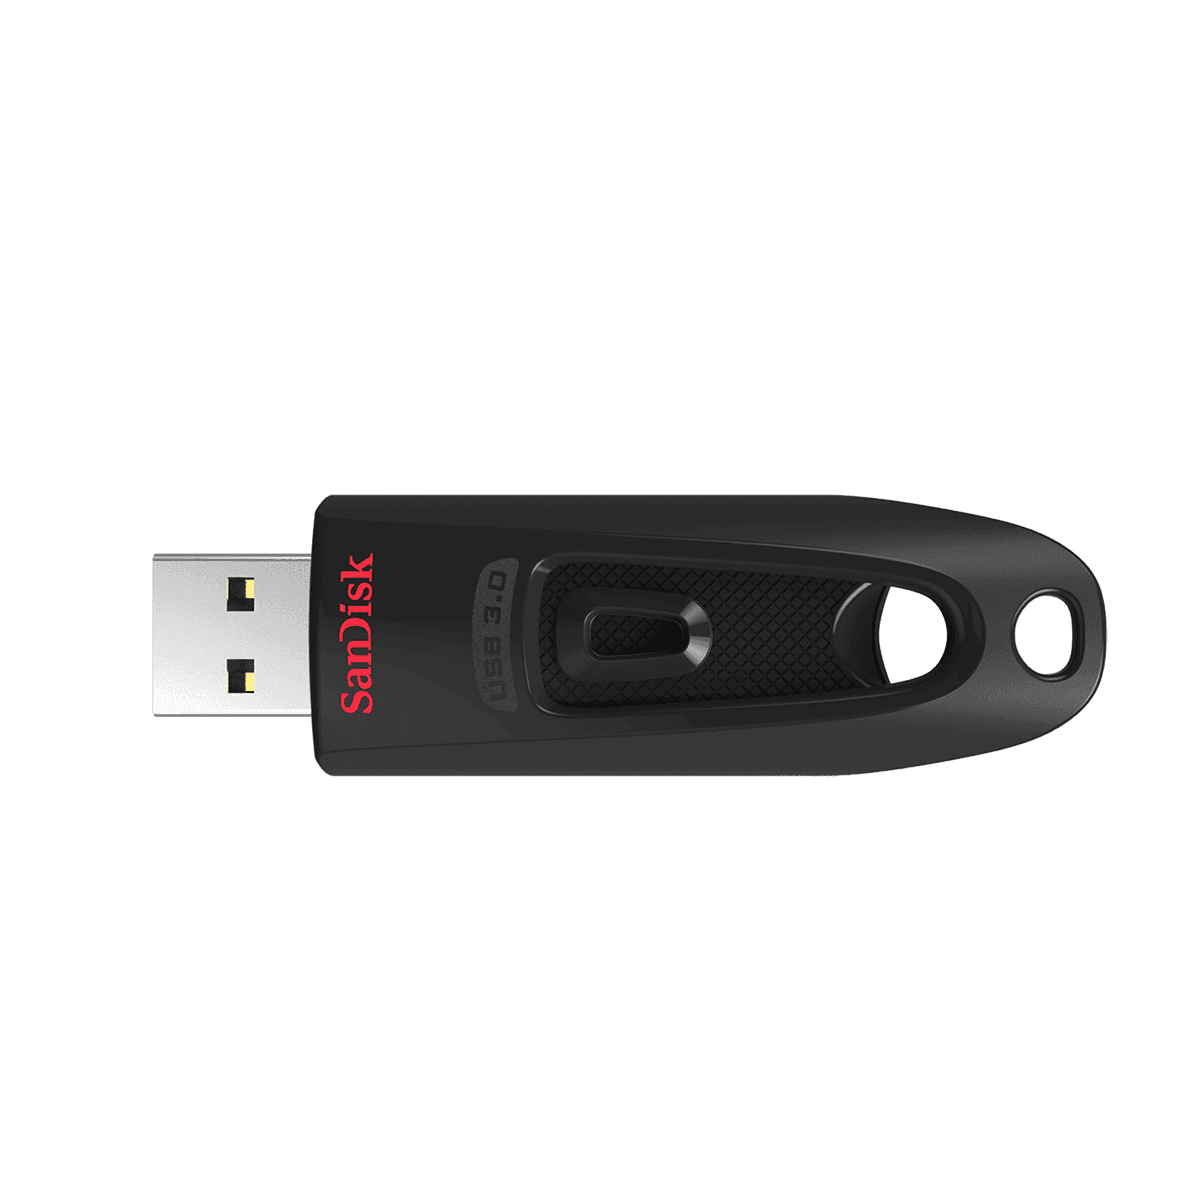 SANDISK ULTRA 64GB USB3.0 FLASH DRIVE